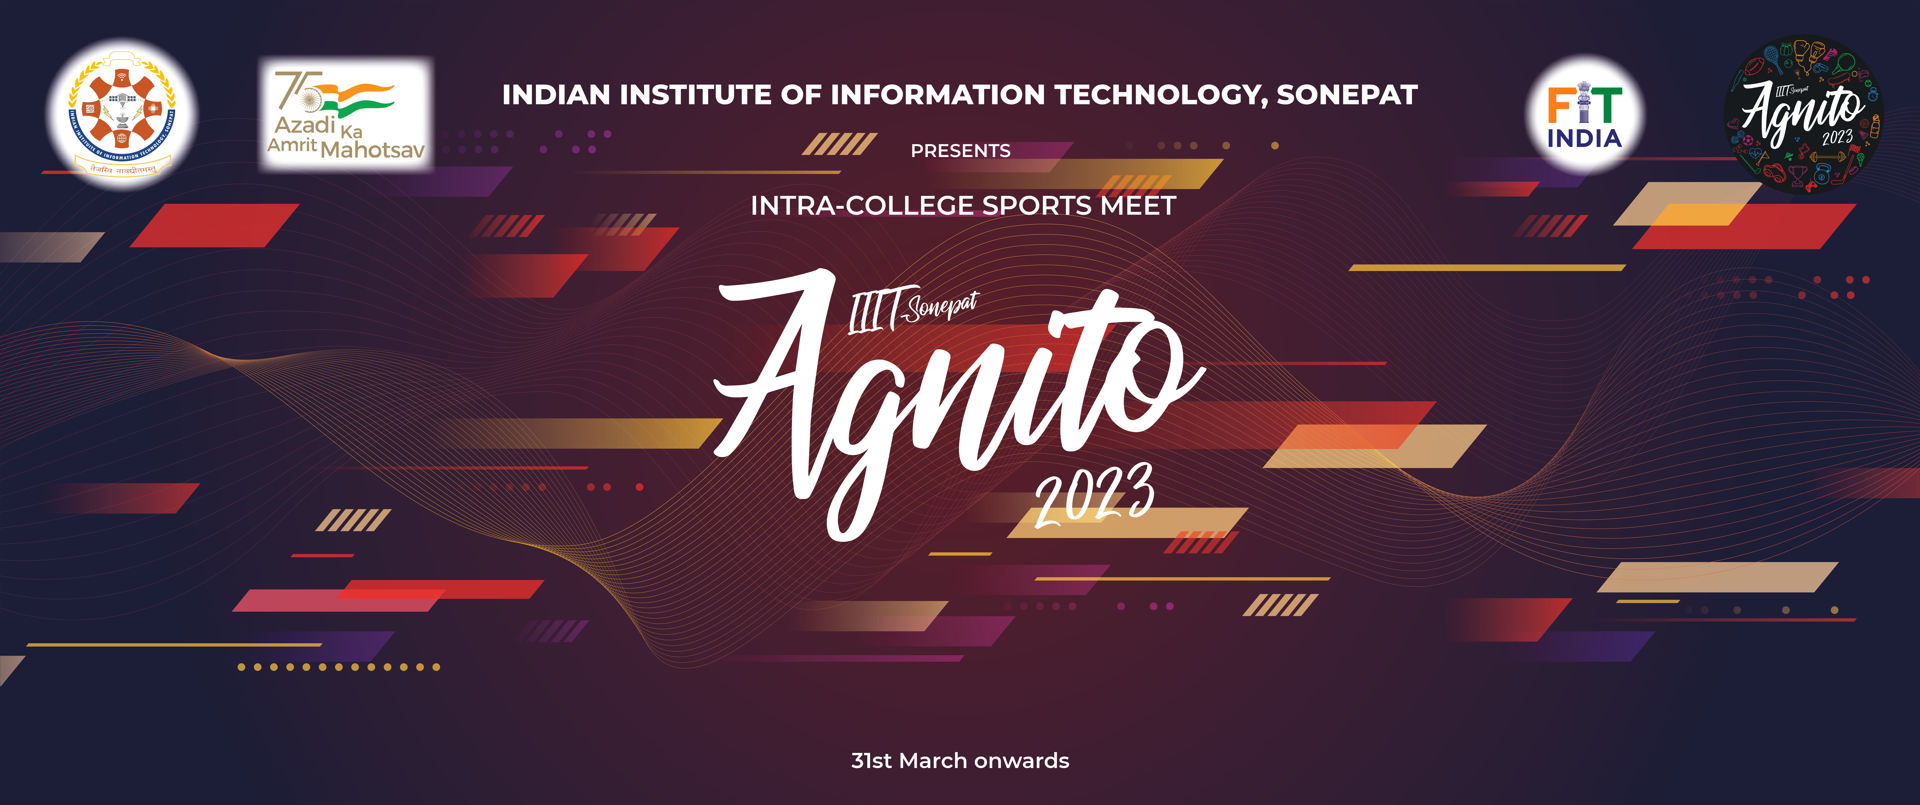 sports/Agnito_2